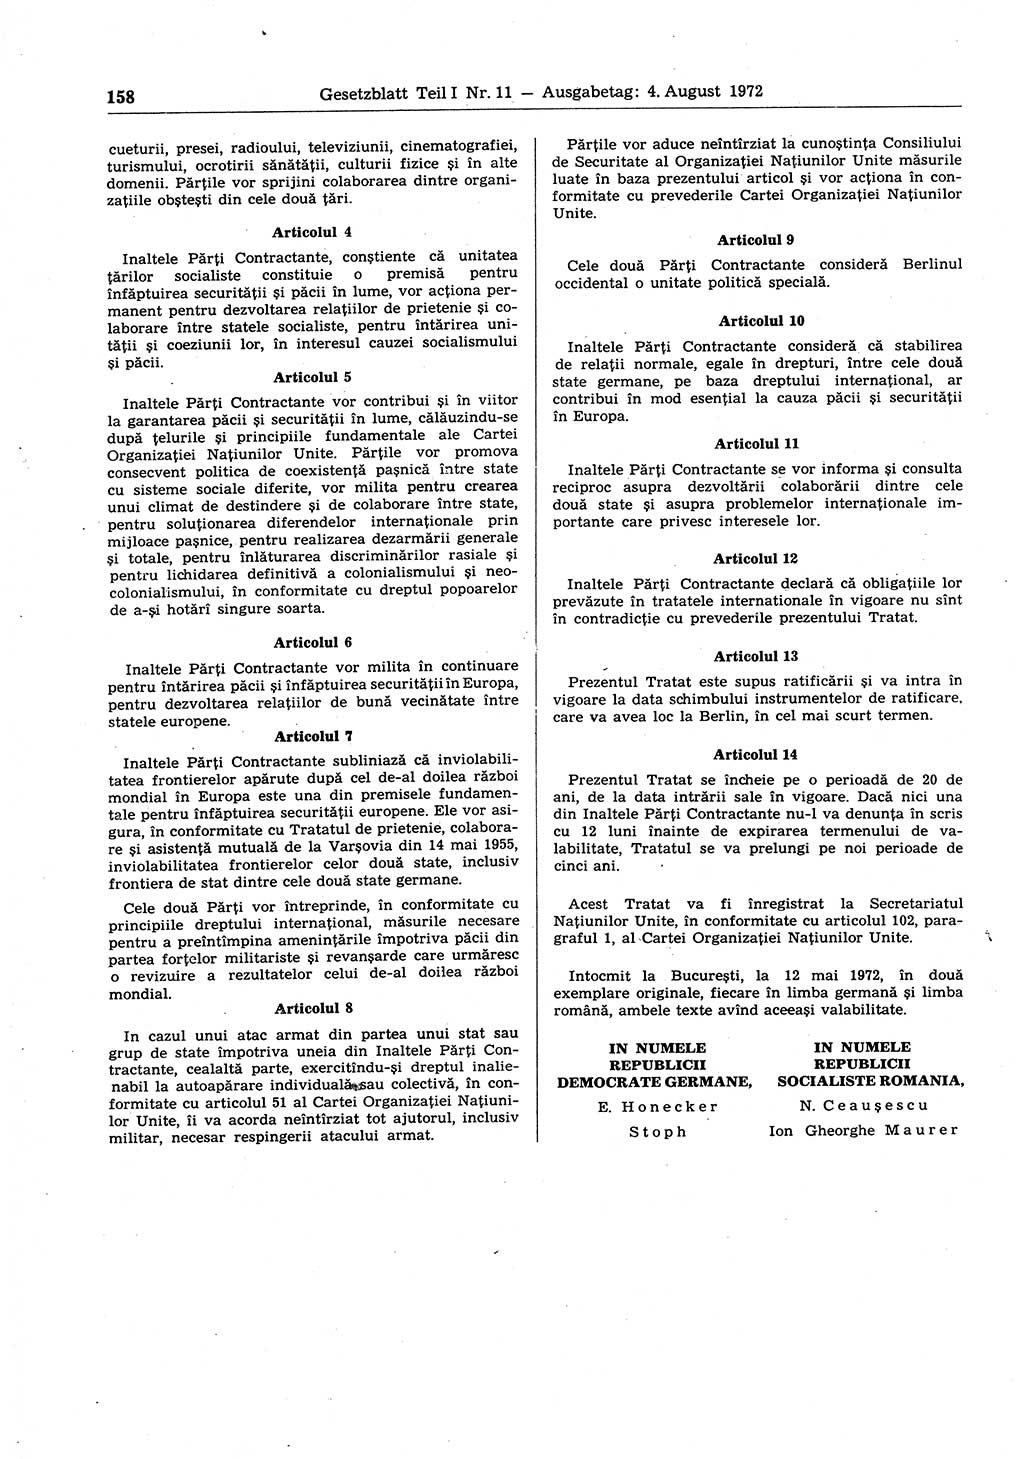 Gesetzblatt (GBl.) der Deutschen Demokratischen Republik (DDR) Teil Ⅰ 1972, Seite 158 (GBl. DDR Ⅰ 1972, S. 158)